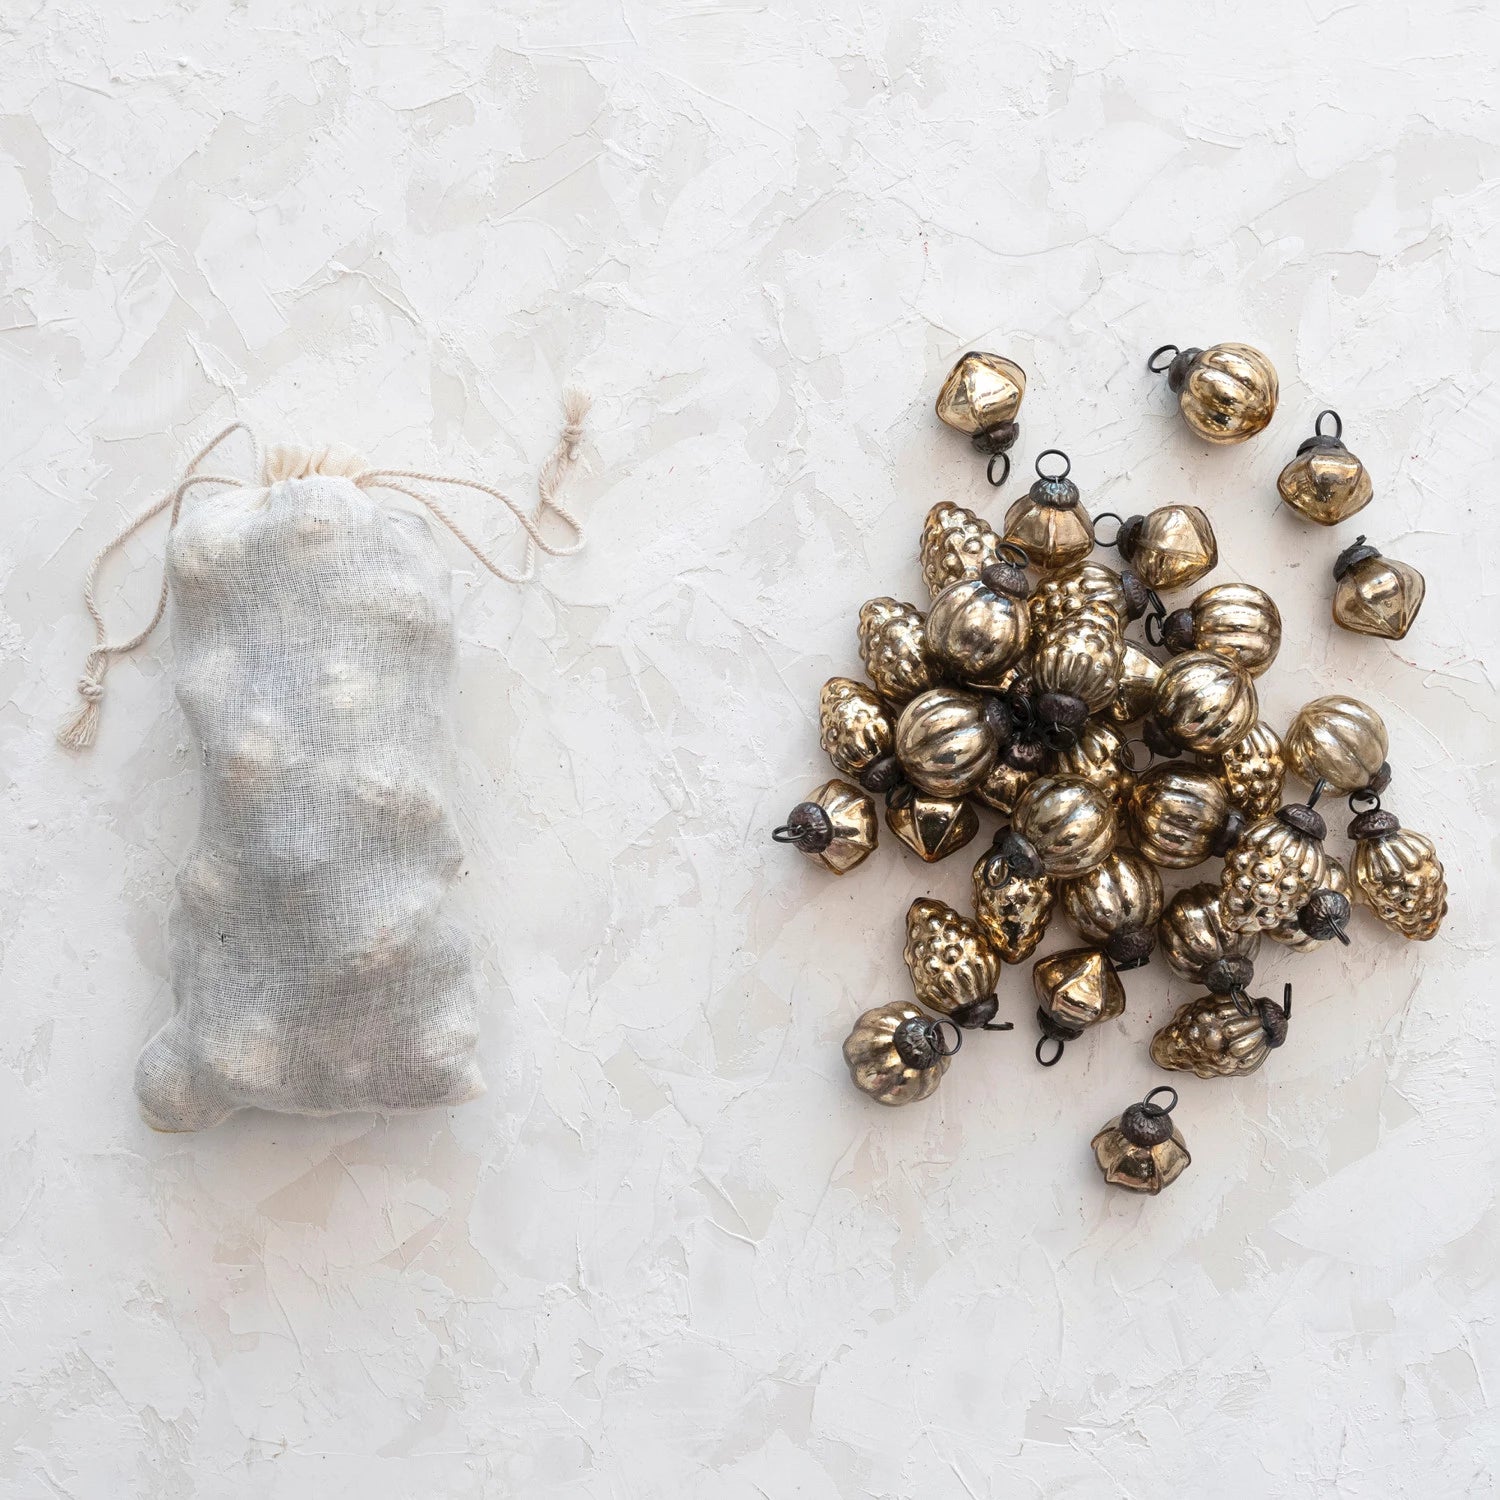 1"H Embossed Mercury Glass Ornaments in Muslin Bag (36)